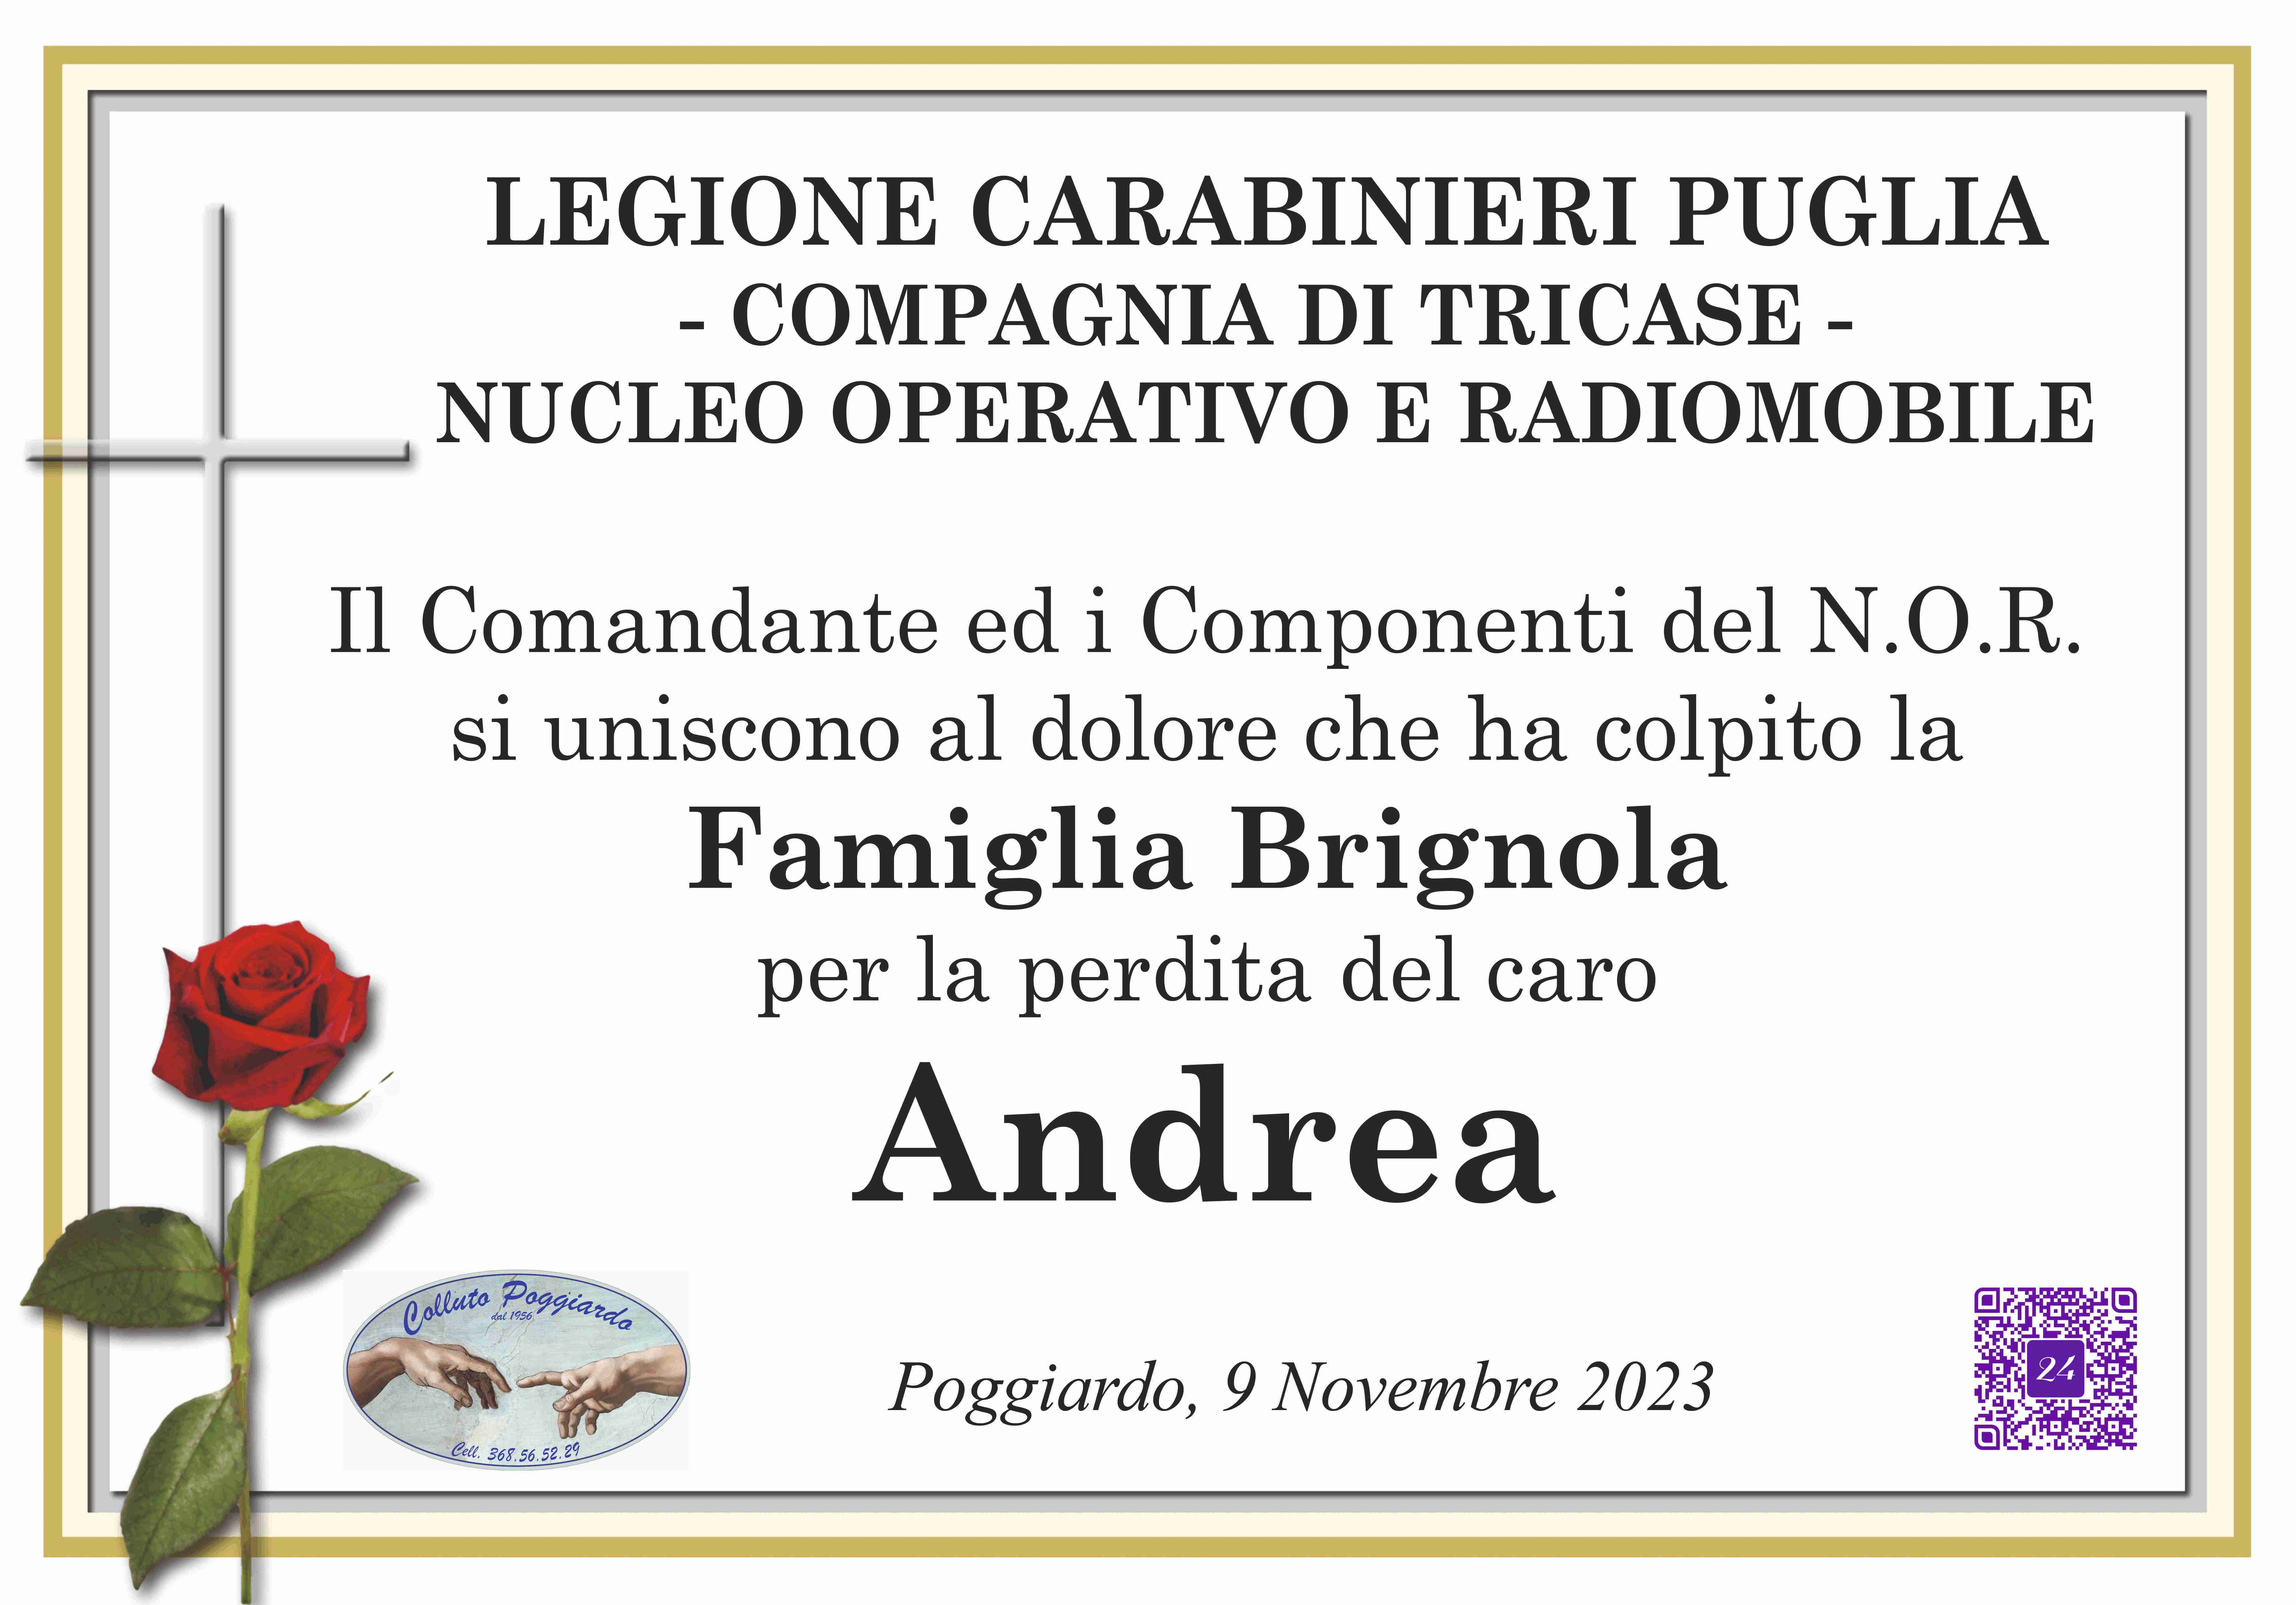 Andrea Brignola